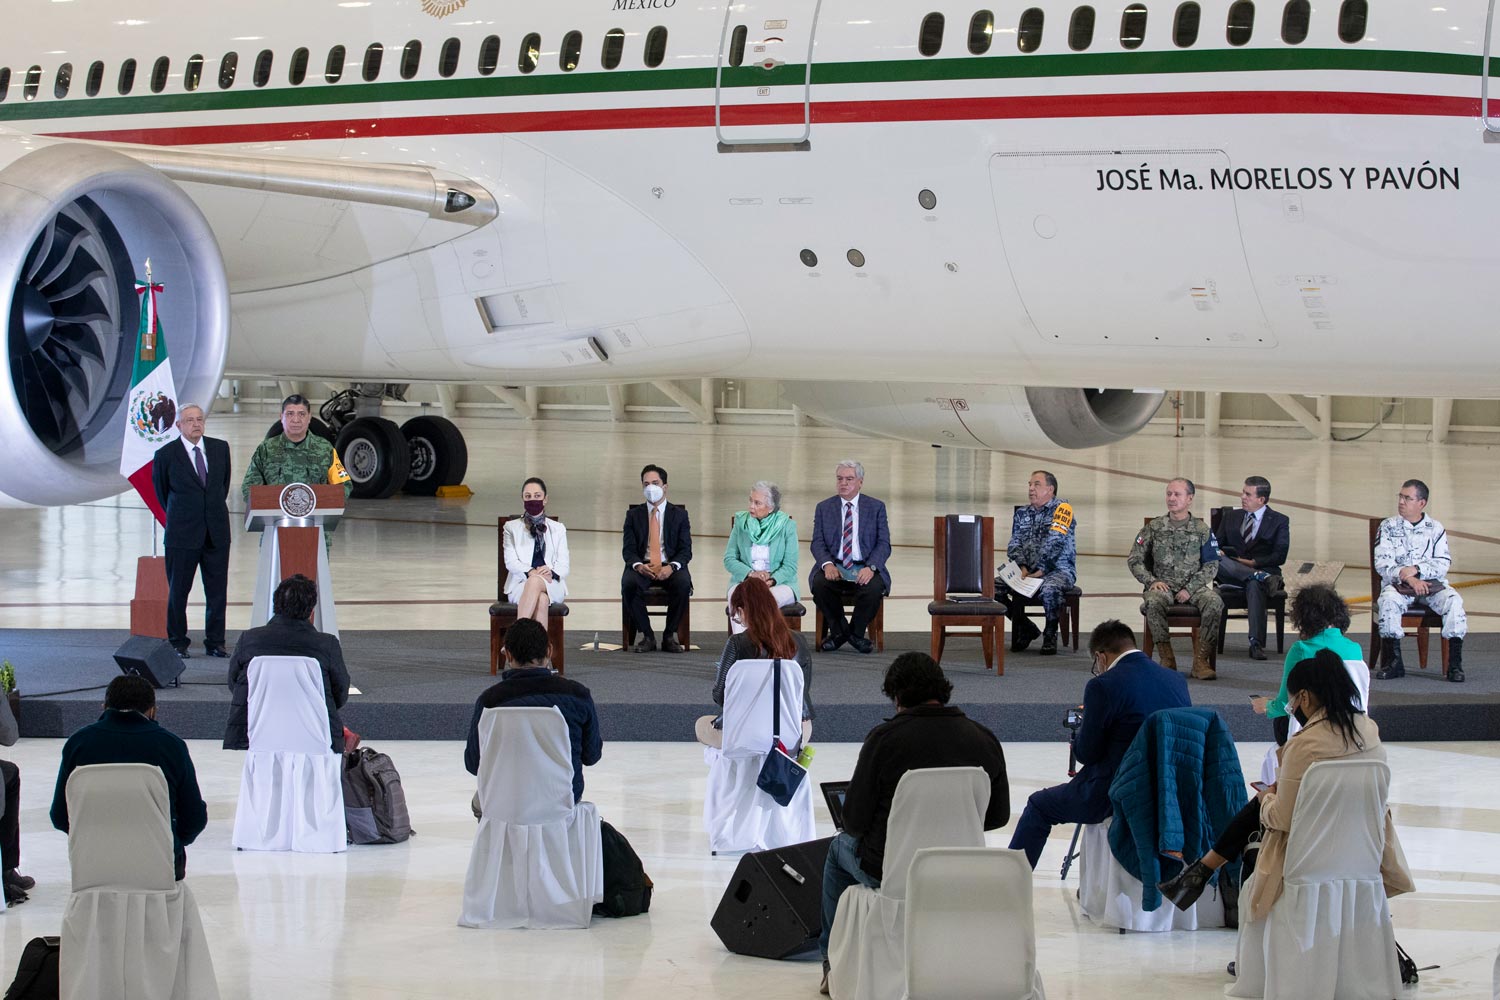 Conferencia frente al avión presidencial muestra lujos de gobiernos neoliberales: presidente; avanza venta de aeronave y de boletos de la Lotería